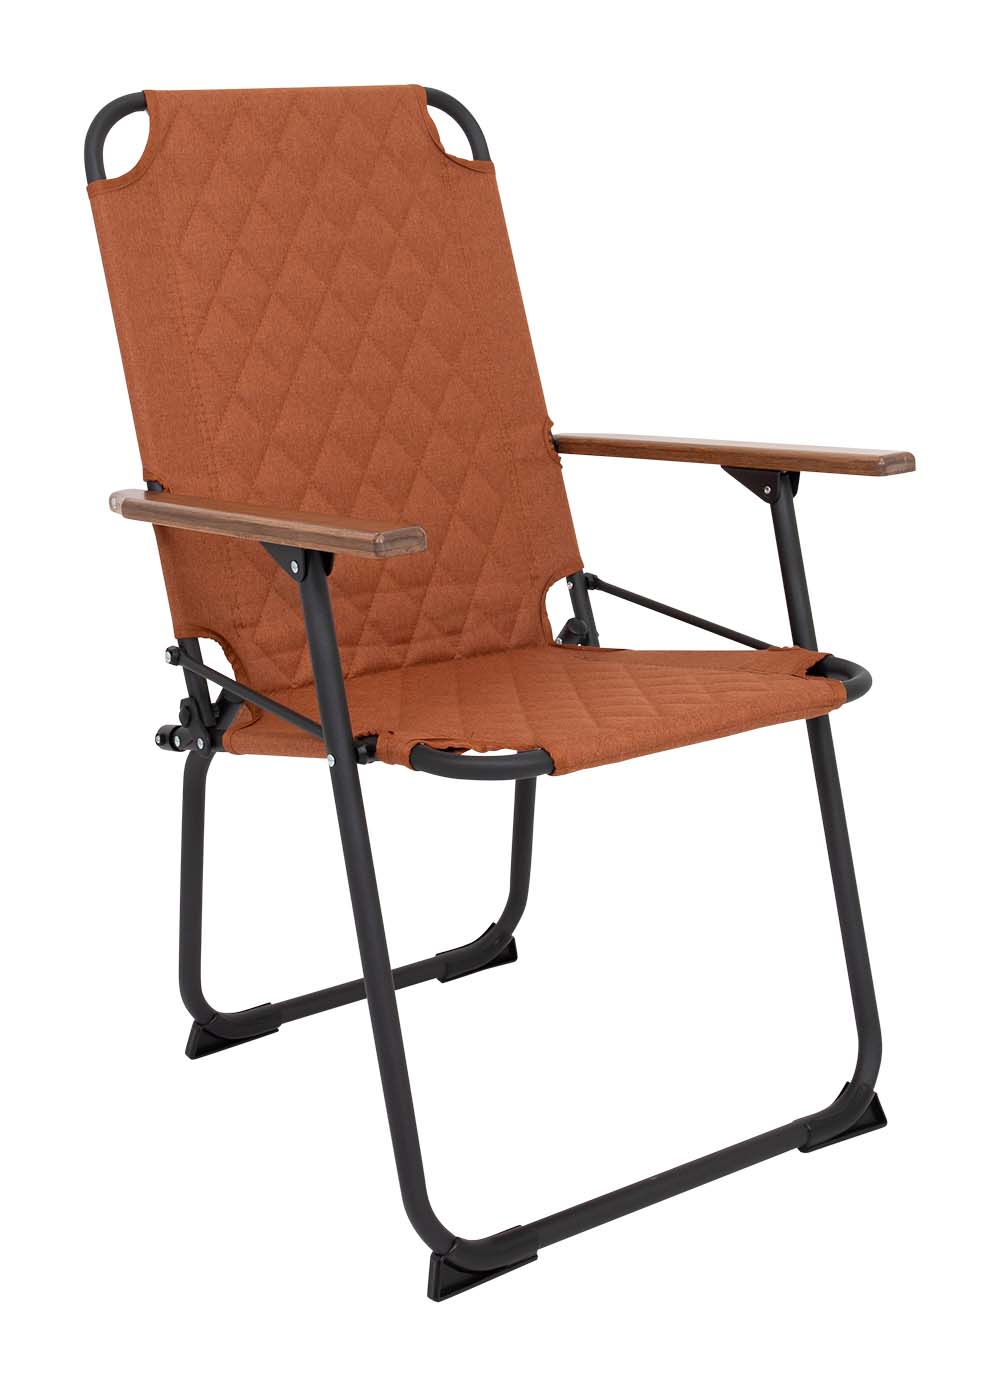 1211895 "De klassieker met een moderne industriële uitstraling. Een stoel waarbij stijl, comfort en functionaliteit worden gecombineerd. Voorzien van een gepolsterde Cationic bekleding voor ultiem comfort, een lichtgewicht aluminium frame en bamboe armleggers. Daarnaast is het stiksel voorzien van een modern patroon. Een ideale stoel voor in de tuin of op de camping, maar ook op het balkon en in de woonkamer. Daarnaast is deze stoel voorzien van extra stabilisatoren en een 'safety-lock' tegen ongewenst inklappen. Compact mee te nemen."